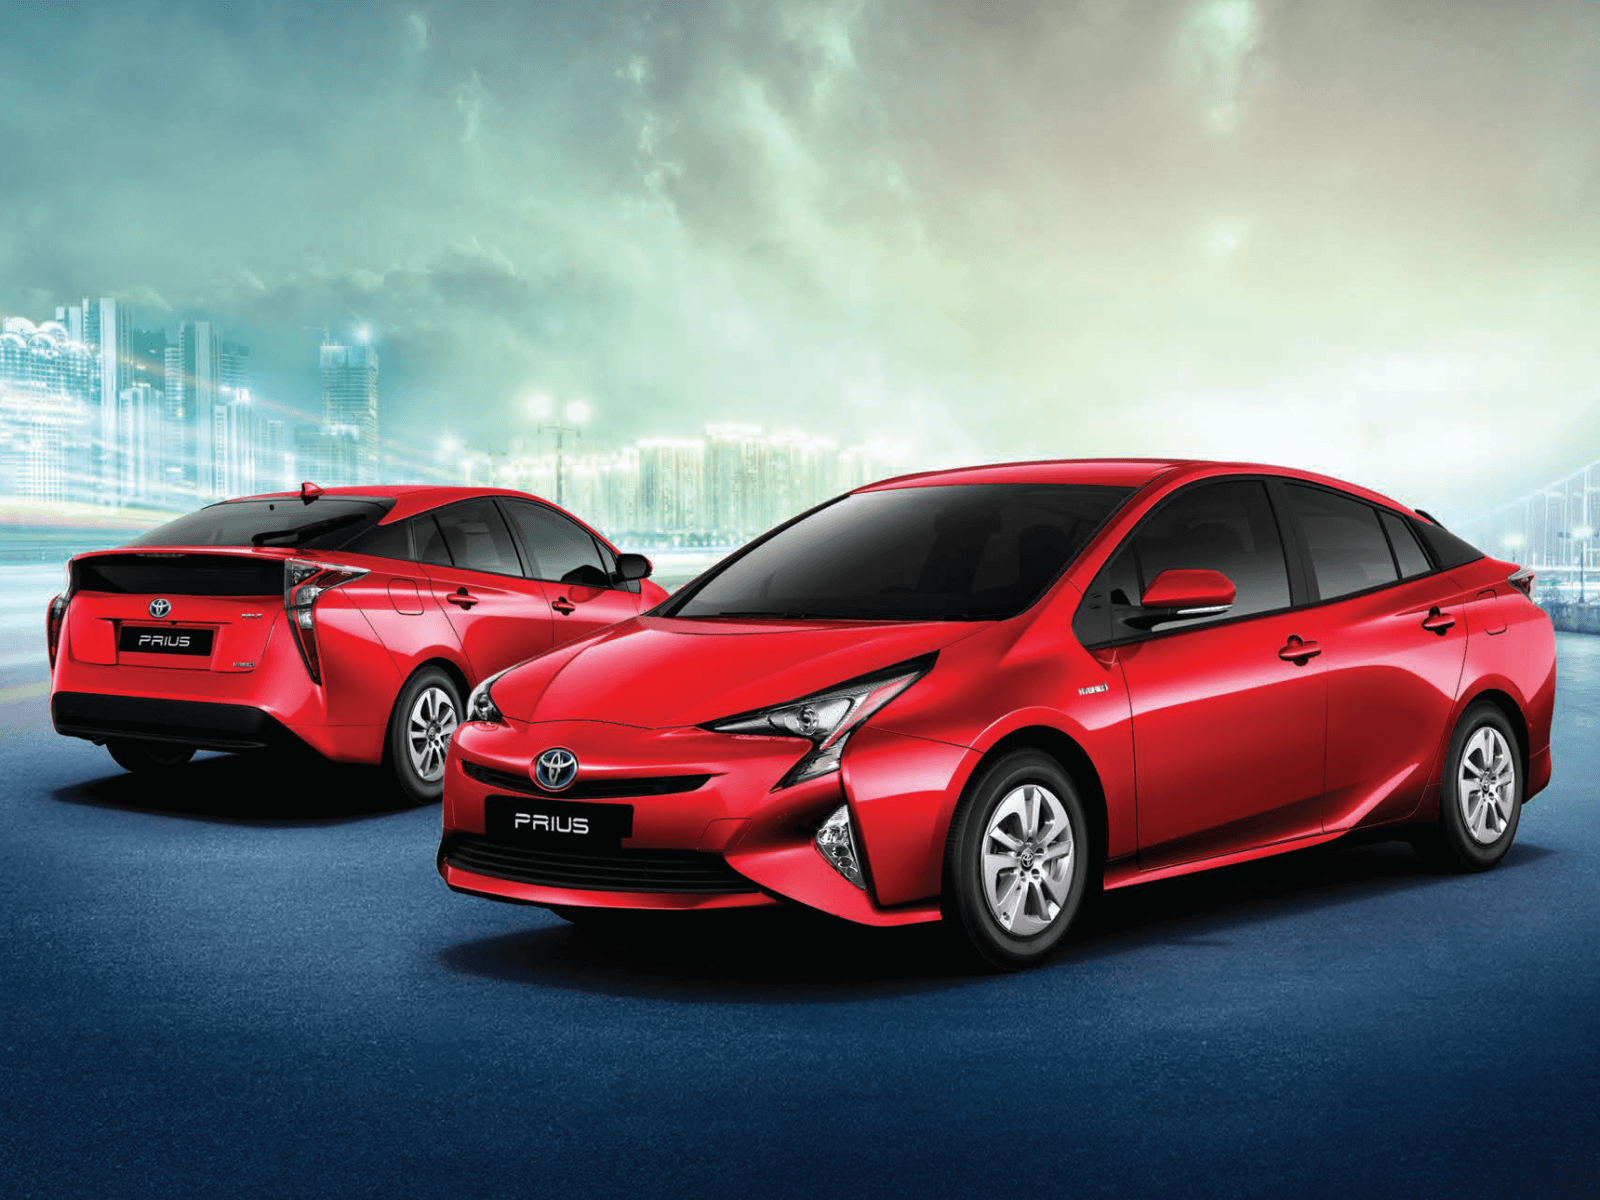 Toyota Prius wallpaper, free download